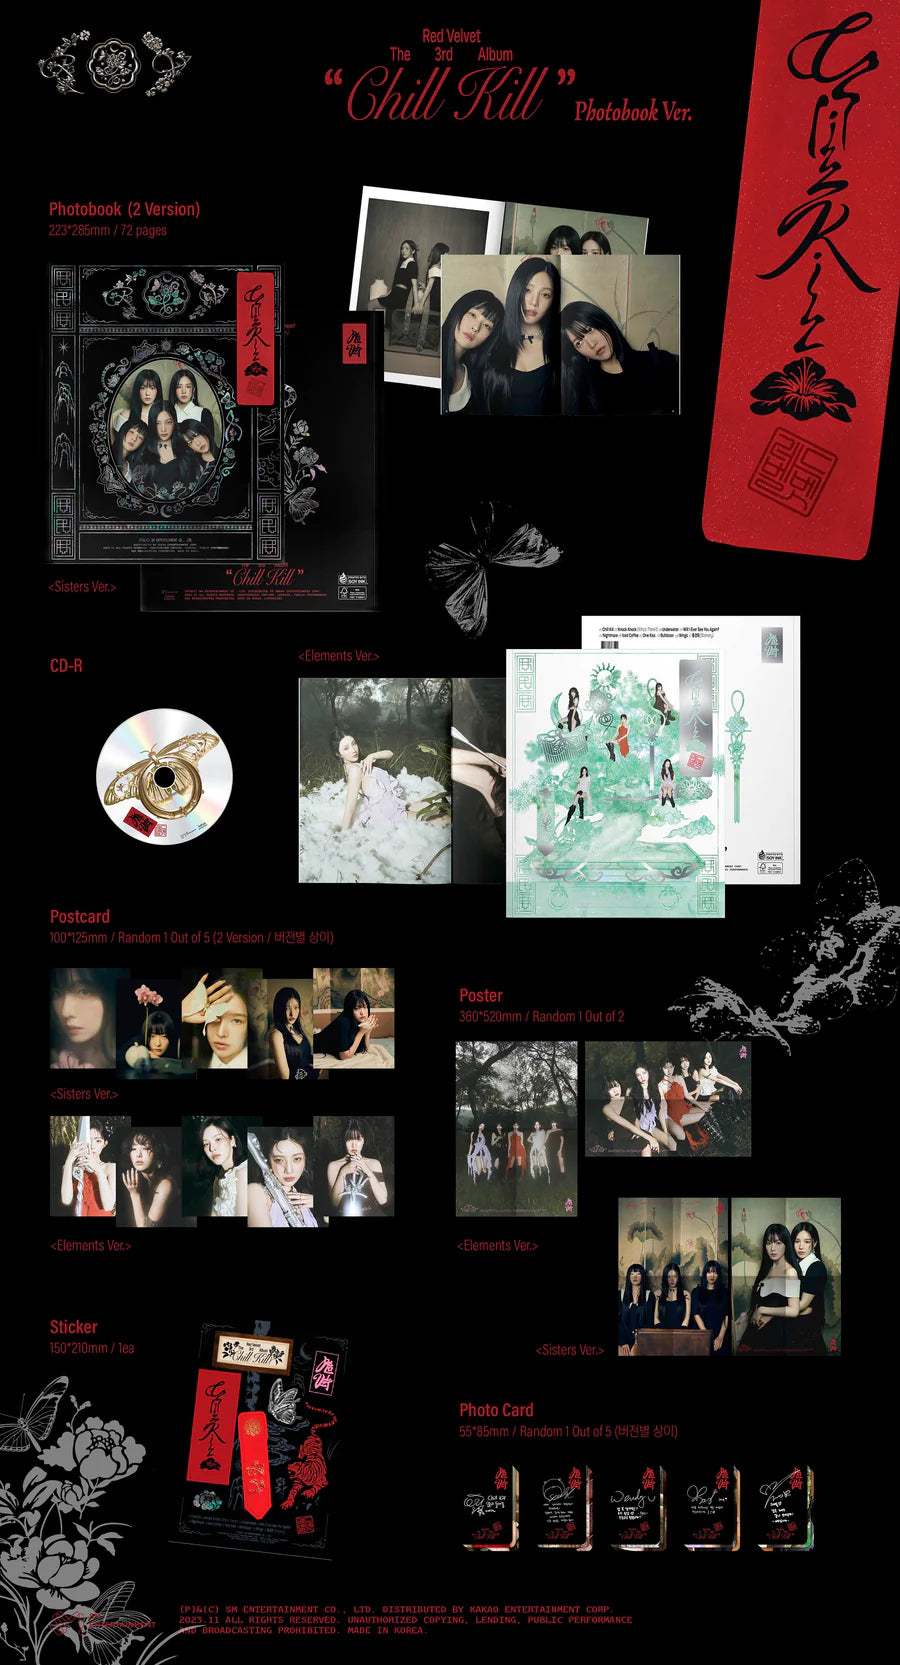 Red Velvet 3rd Full Album Chill Kill (Photobook Version)